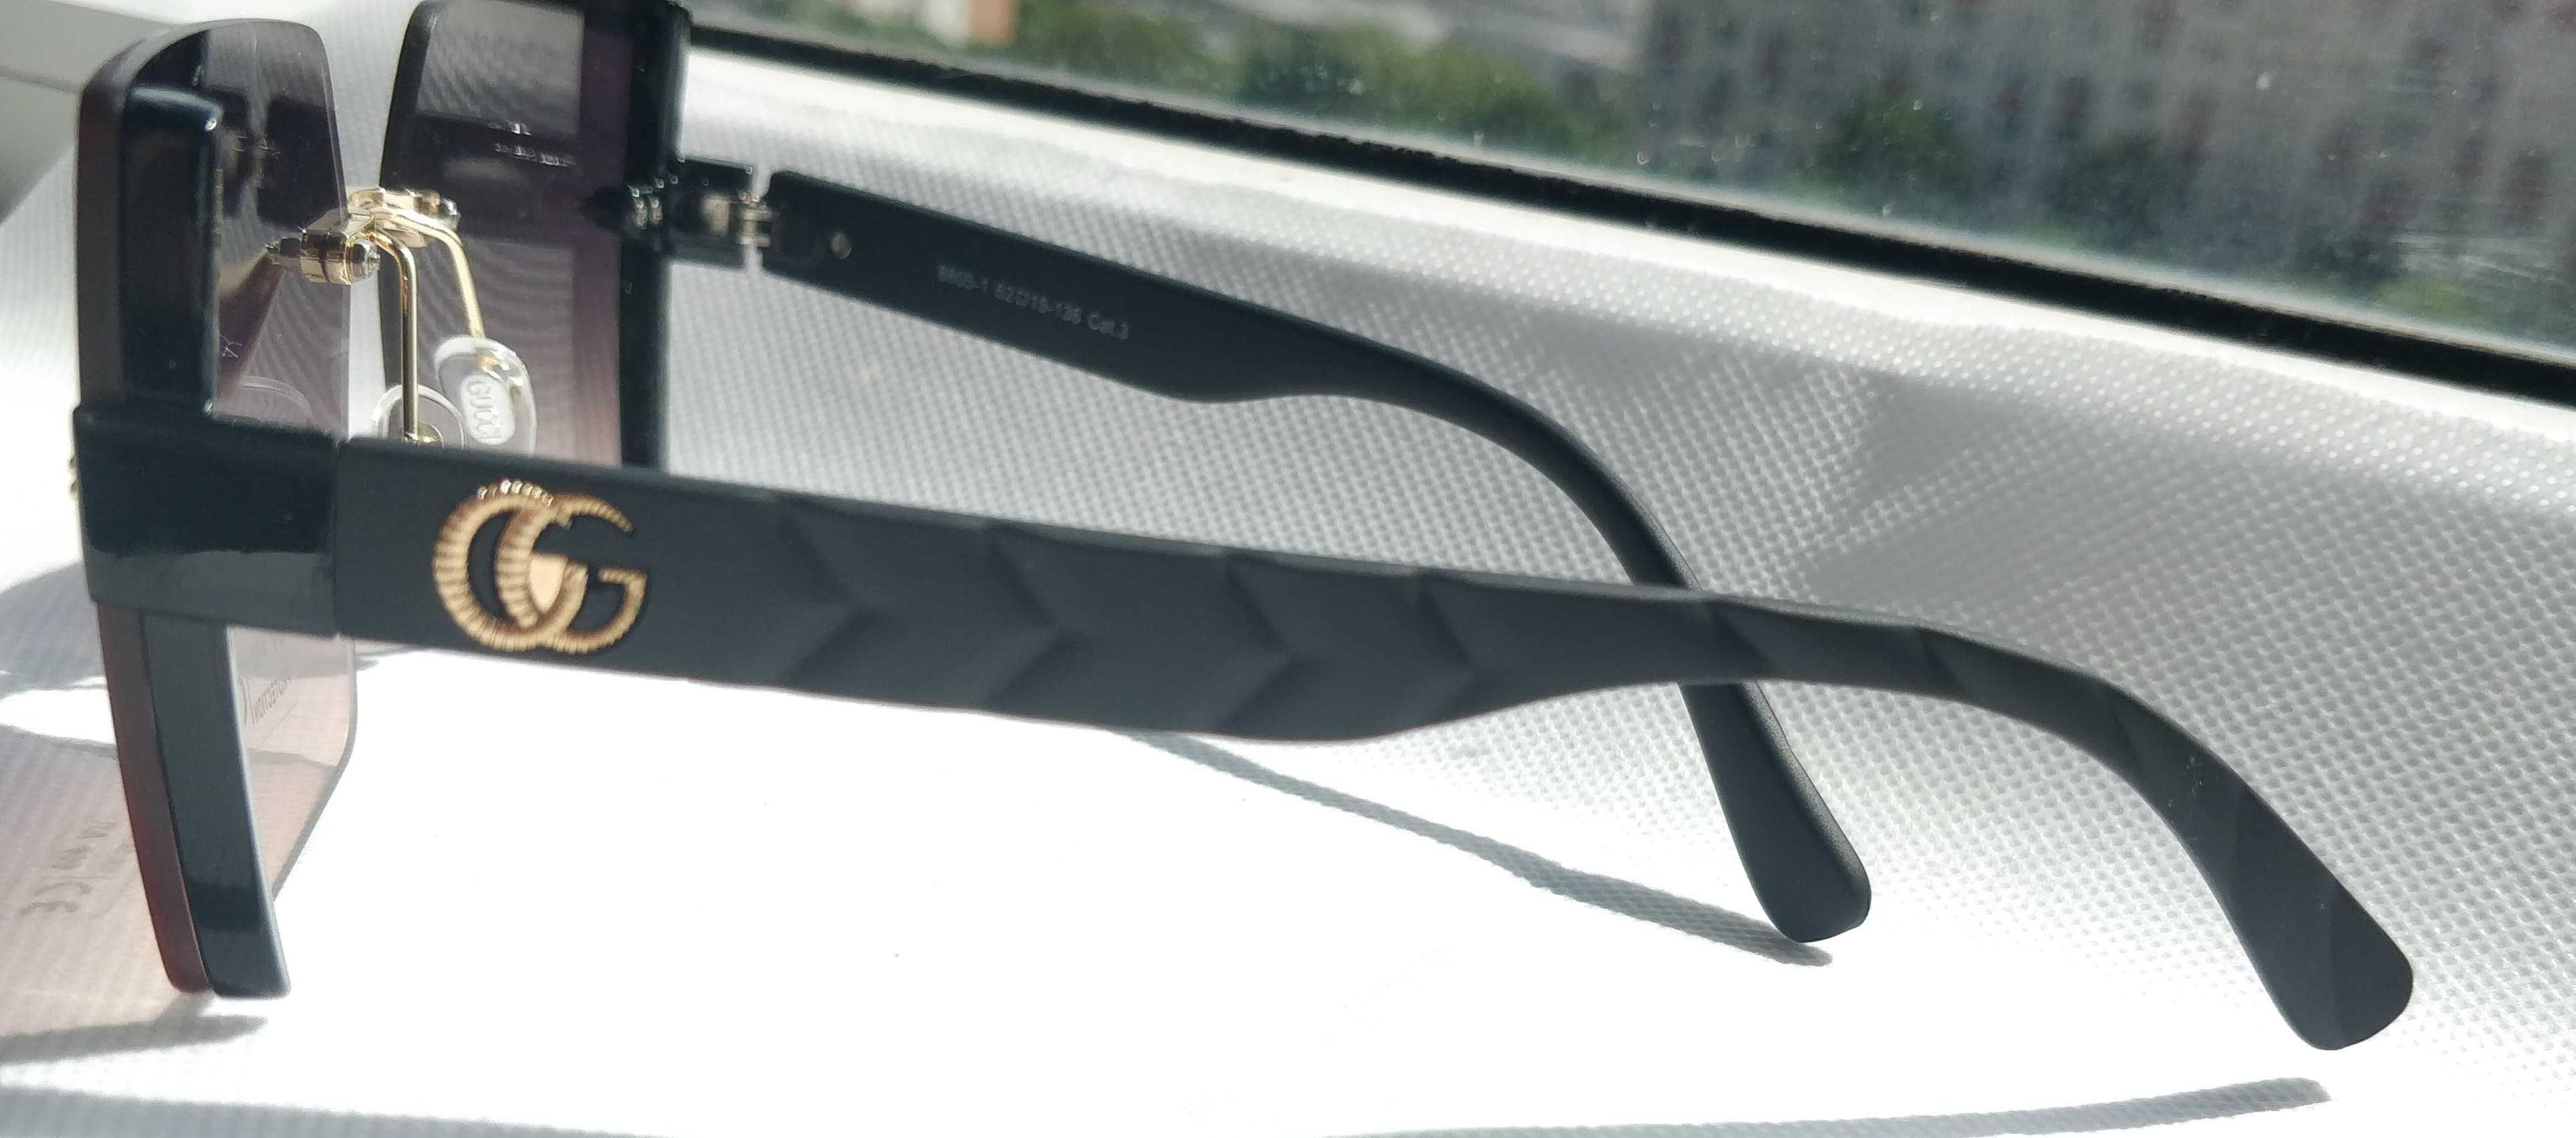 Ochelari de soare Gucci model 3 ochii de pisica